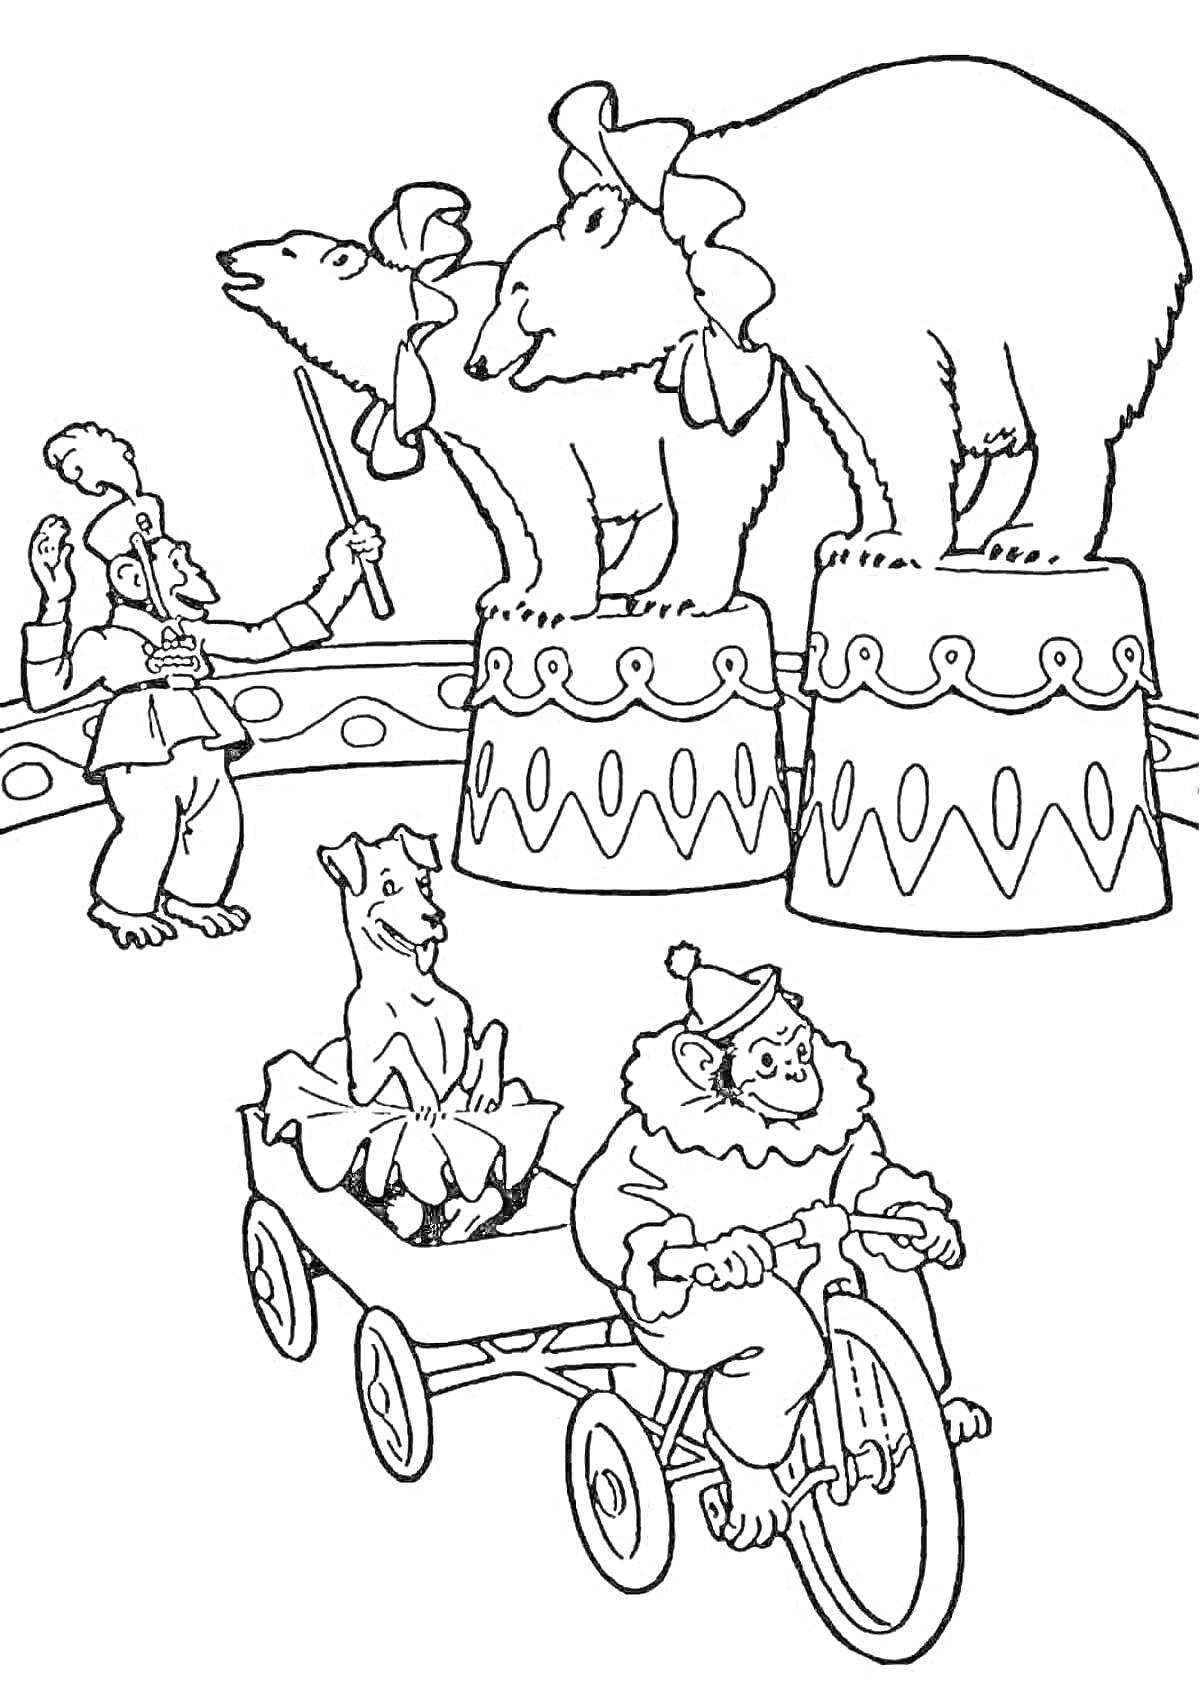 Раскраска арена цирка с дрессировщиком, двух медведями, собакой в вагончике и обезьяной на велосипеде